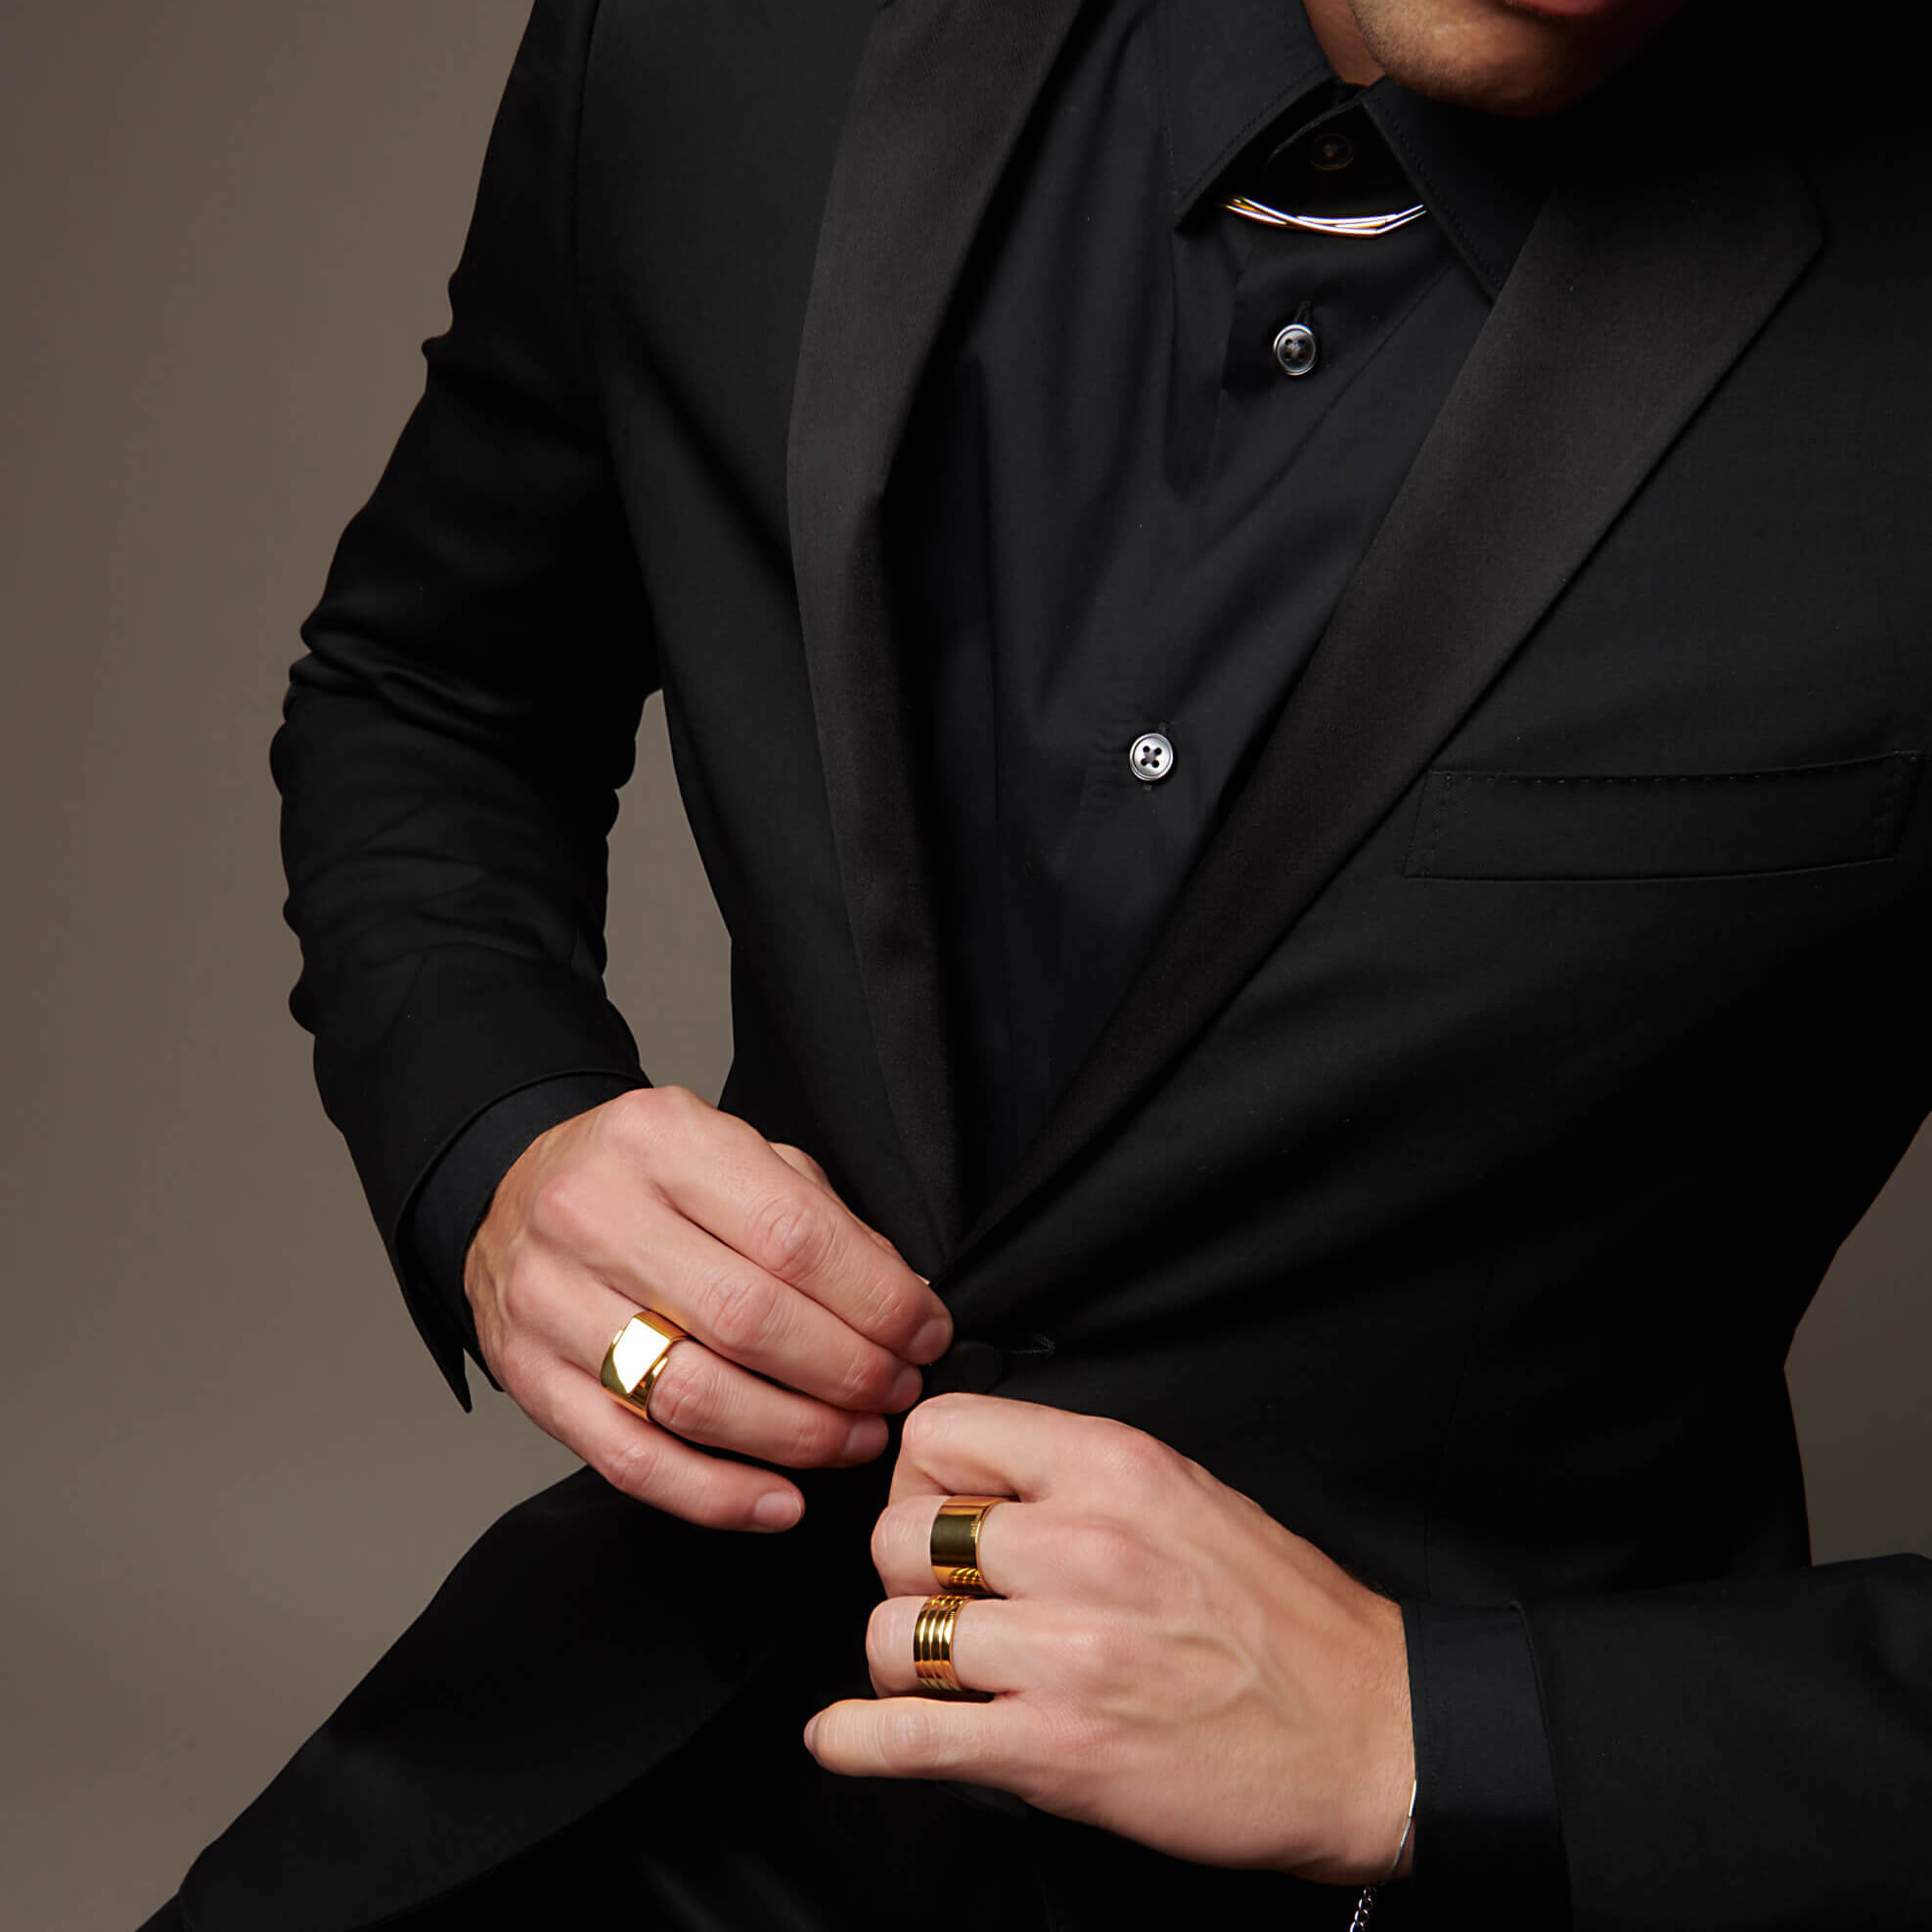 Man buttoning suit jacket wearing atelium rings